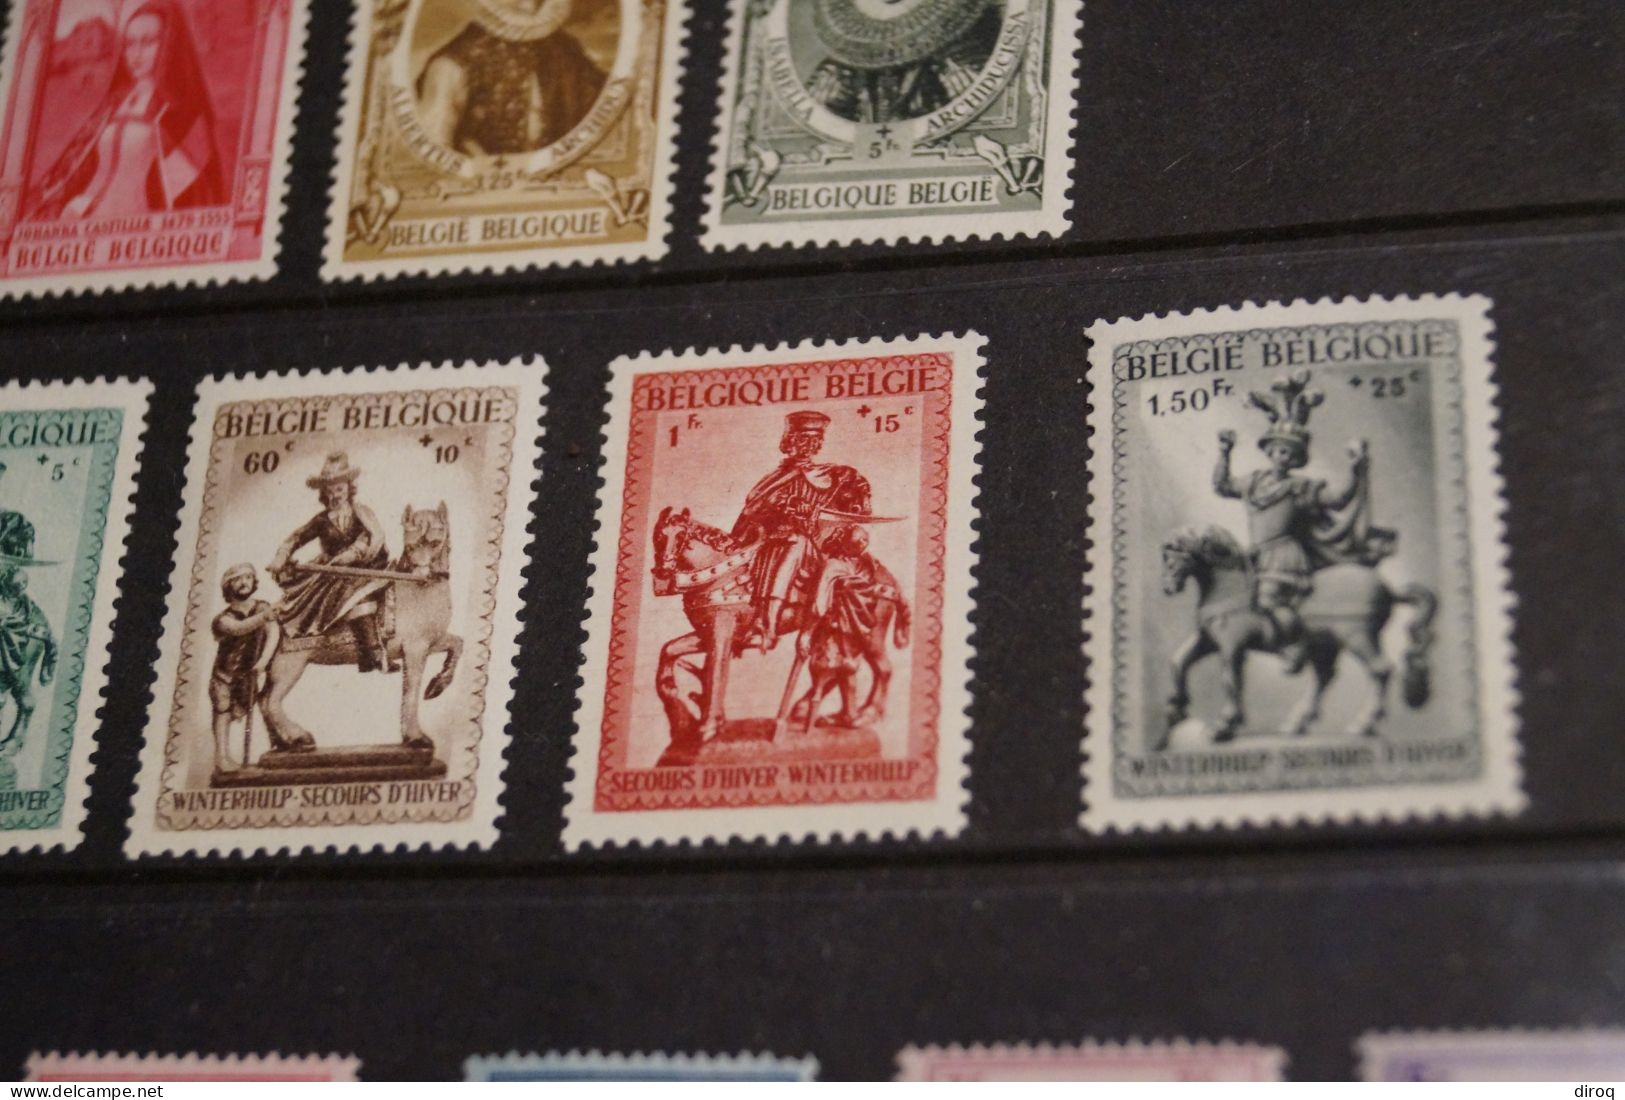 Belle collection de 32 timbres,état strictement neuf,collection,à identifier